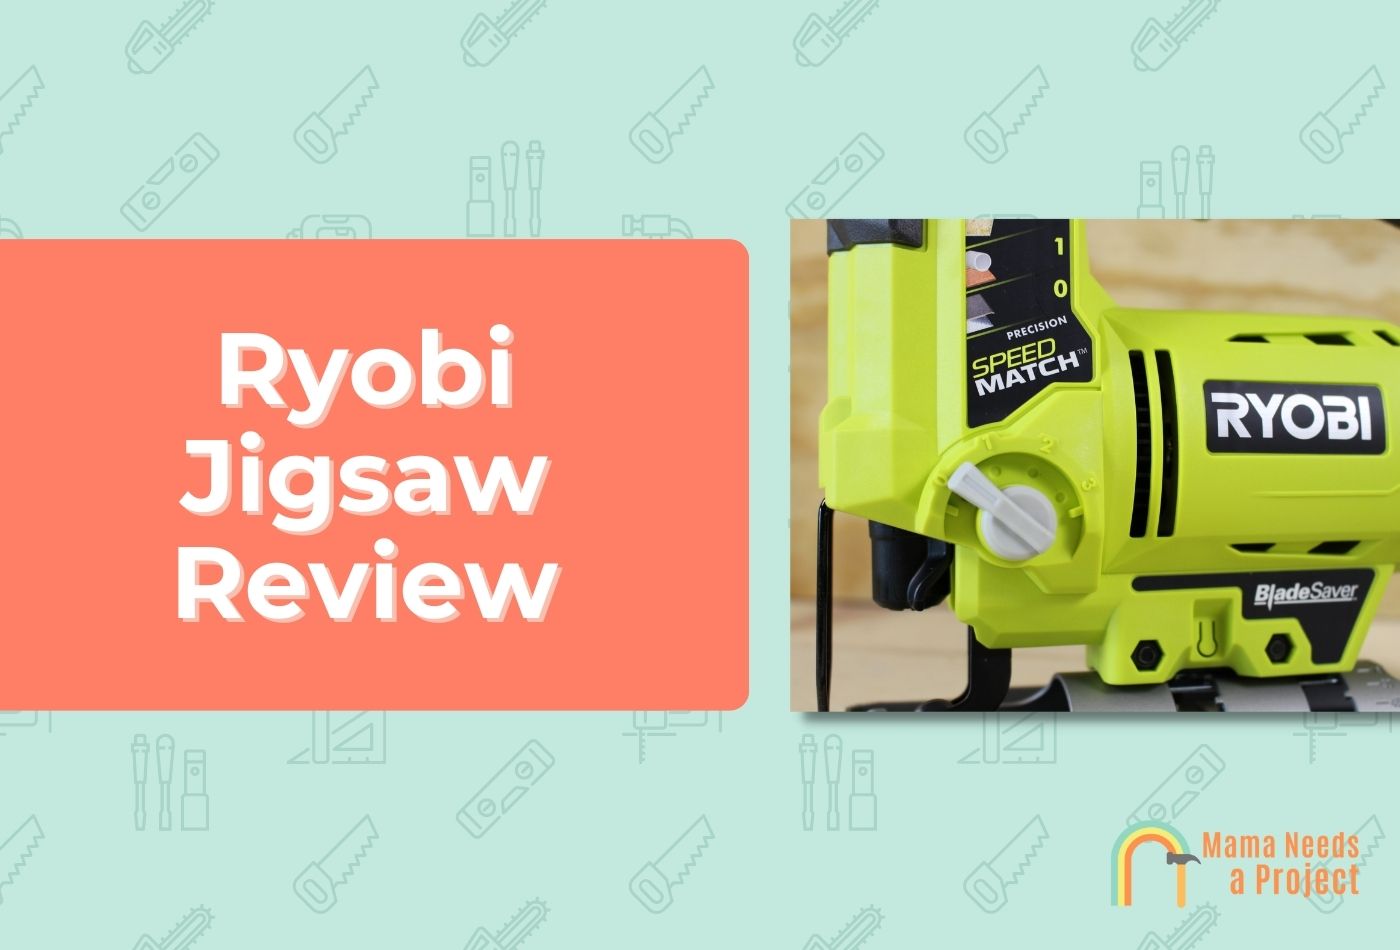 Ryobi Jigsaw Review